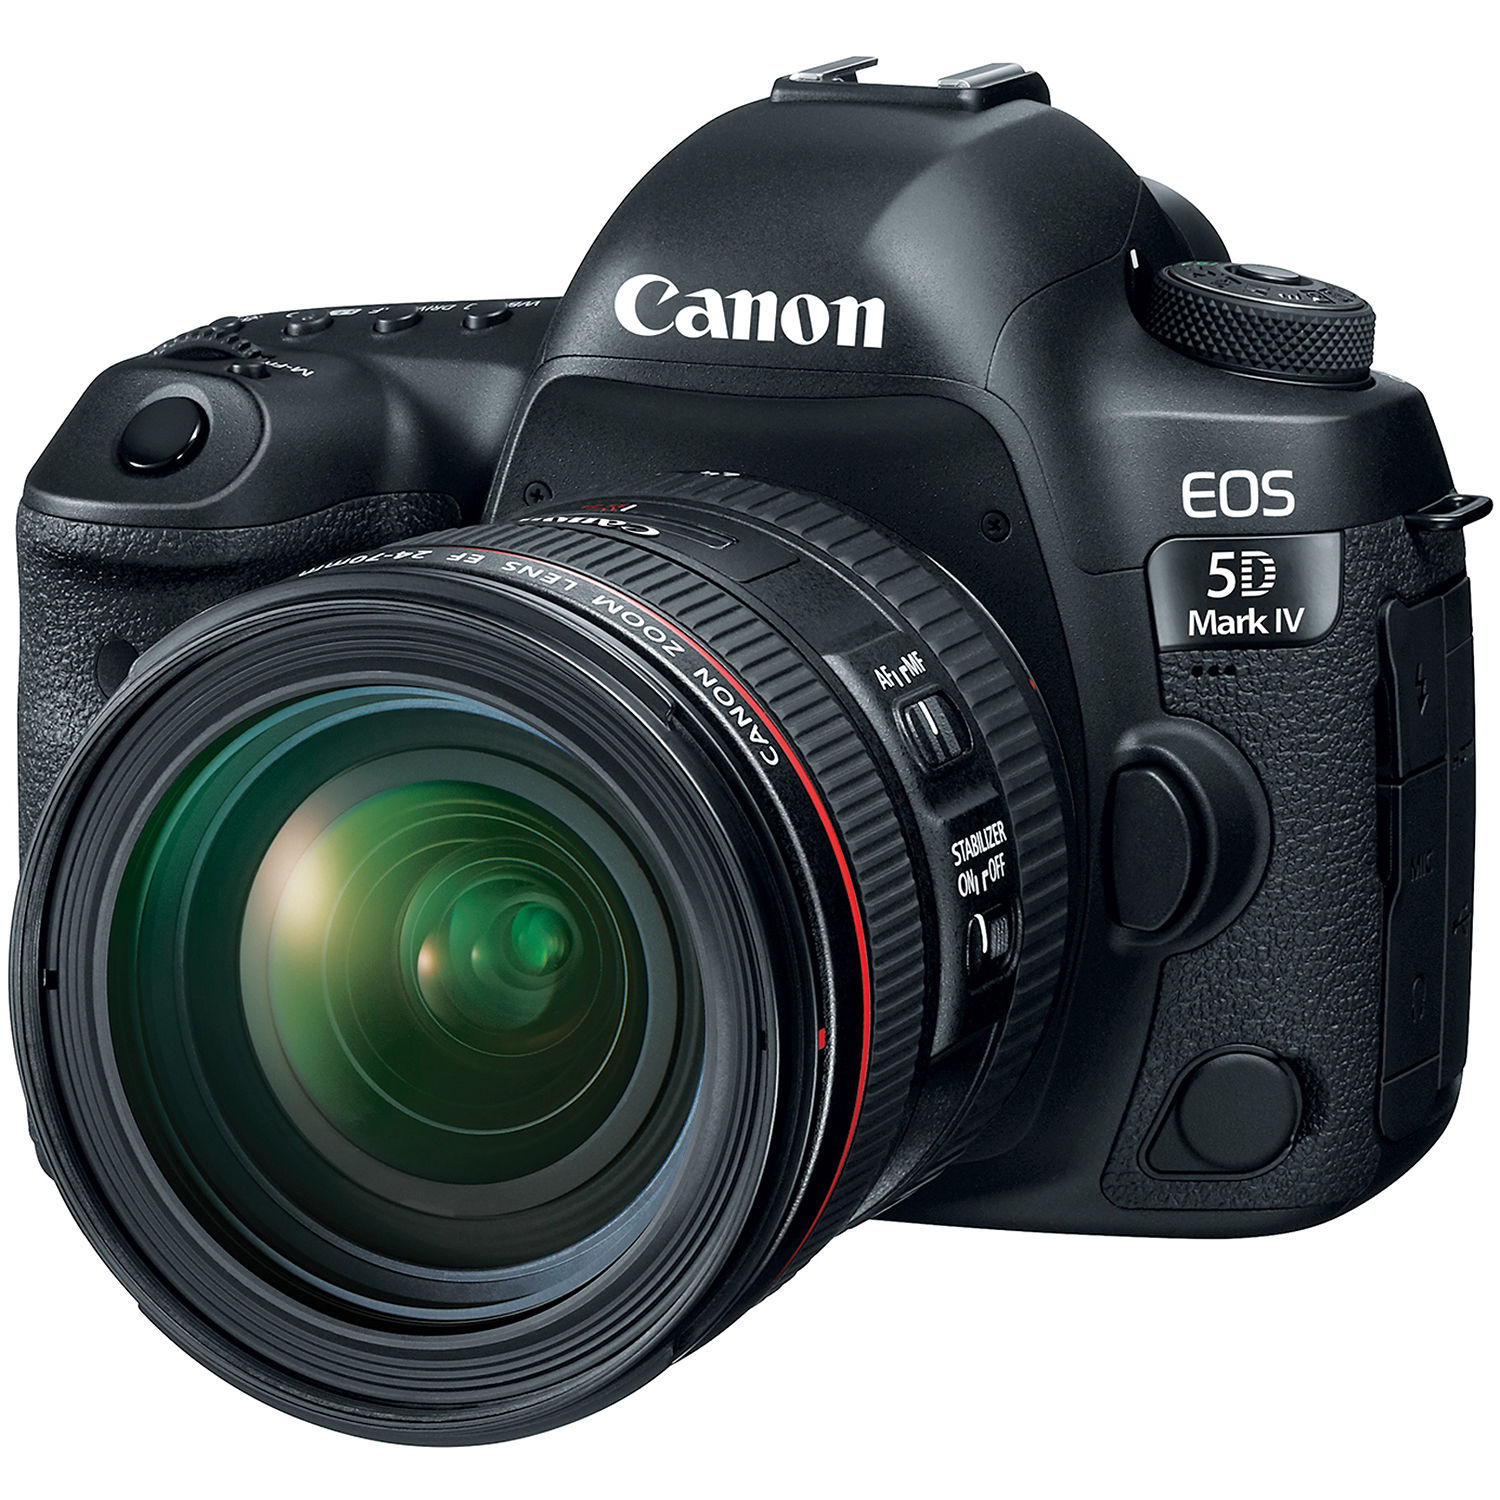 Câmera Canon Eos 5d Mark Iii: Ficha Técnica, Onde Comprar, Preço E Principais Informações